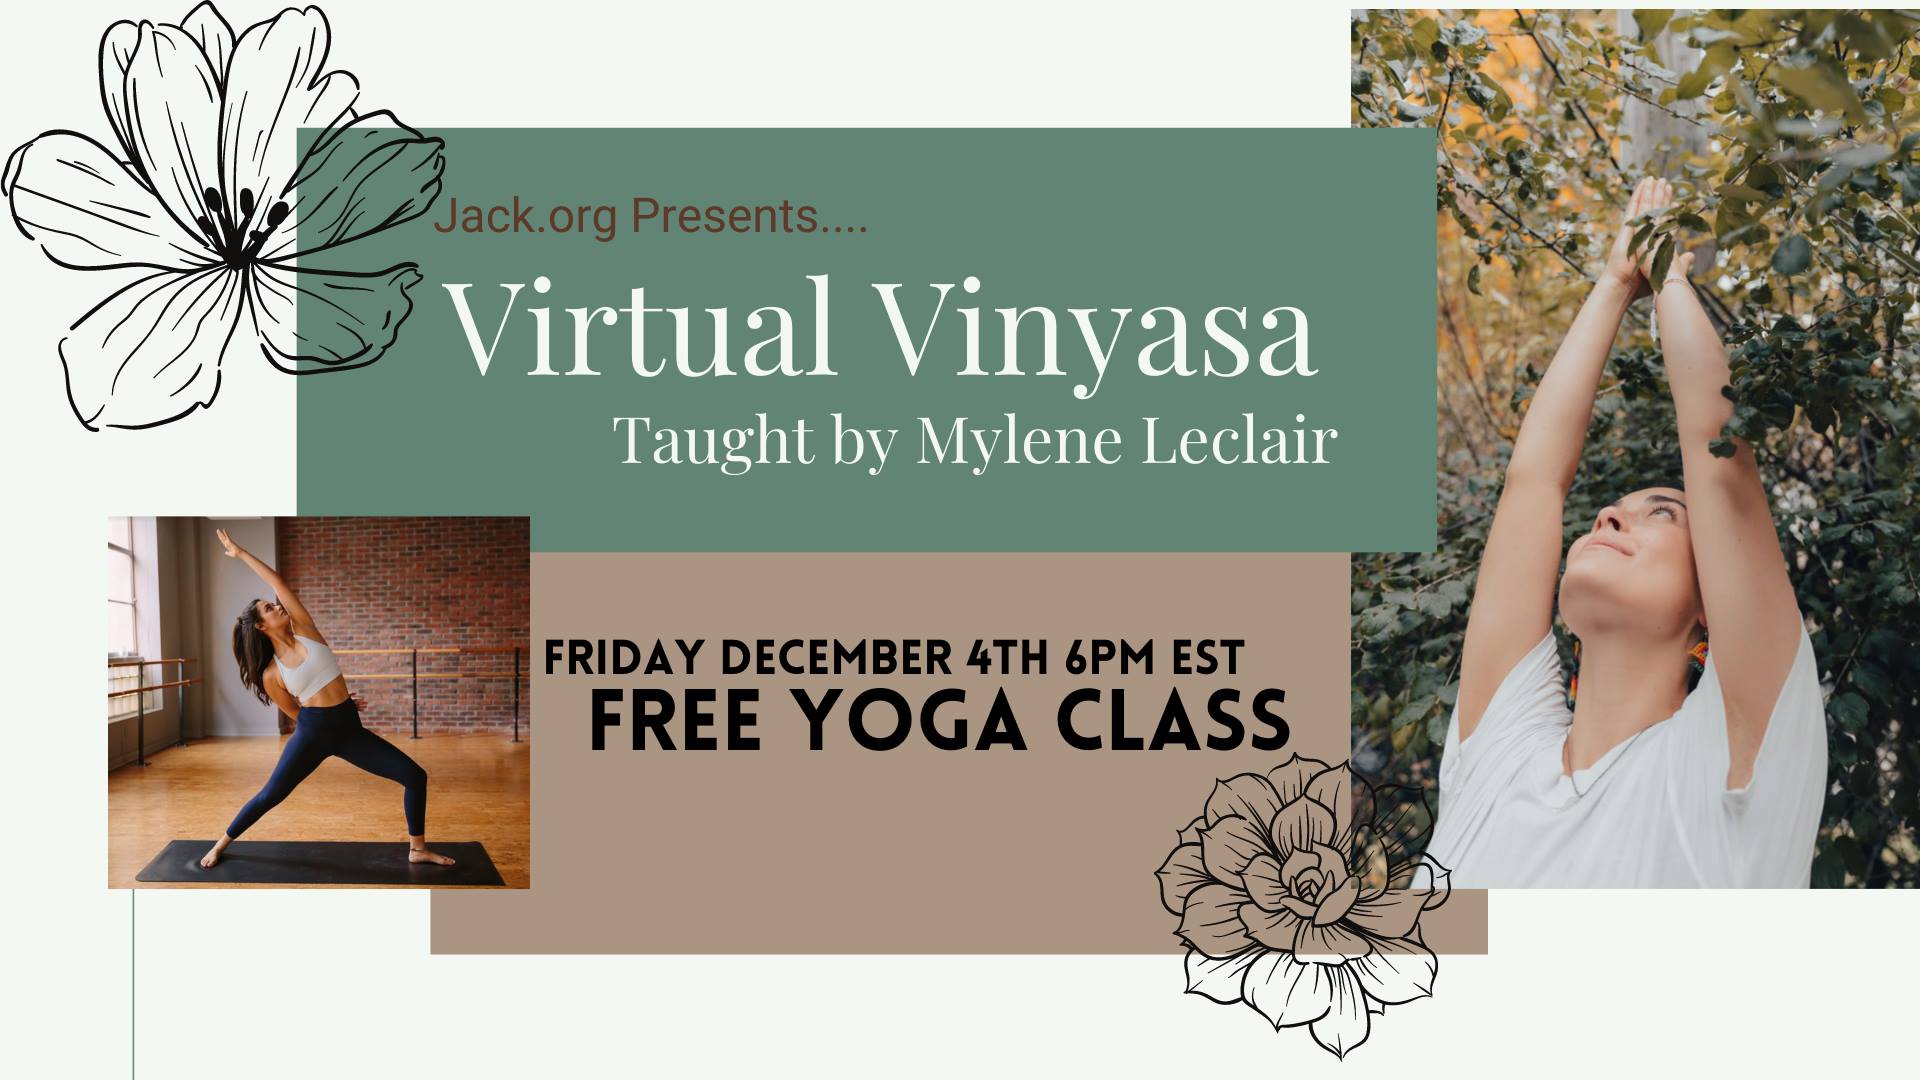 Virtual Vinyasa - Free Yoga Class